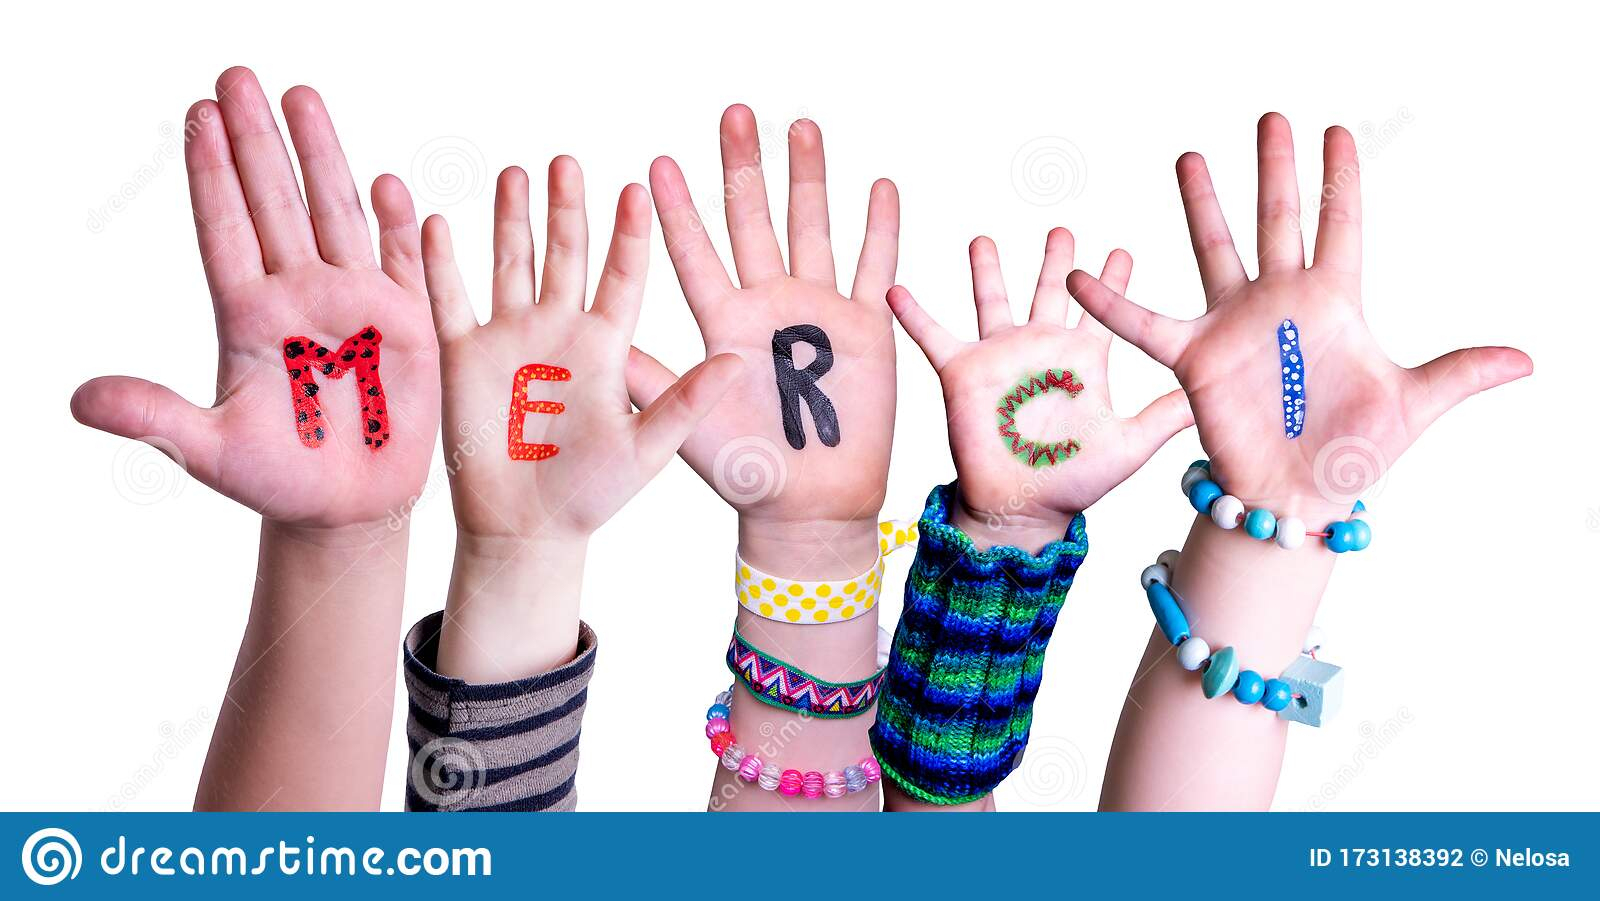 Die Kinderhände, Die Wort Merci-Durchschnitte Aufbauen in Bilder Kinderhände